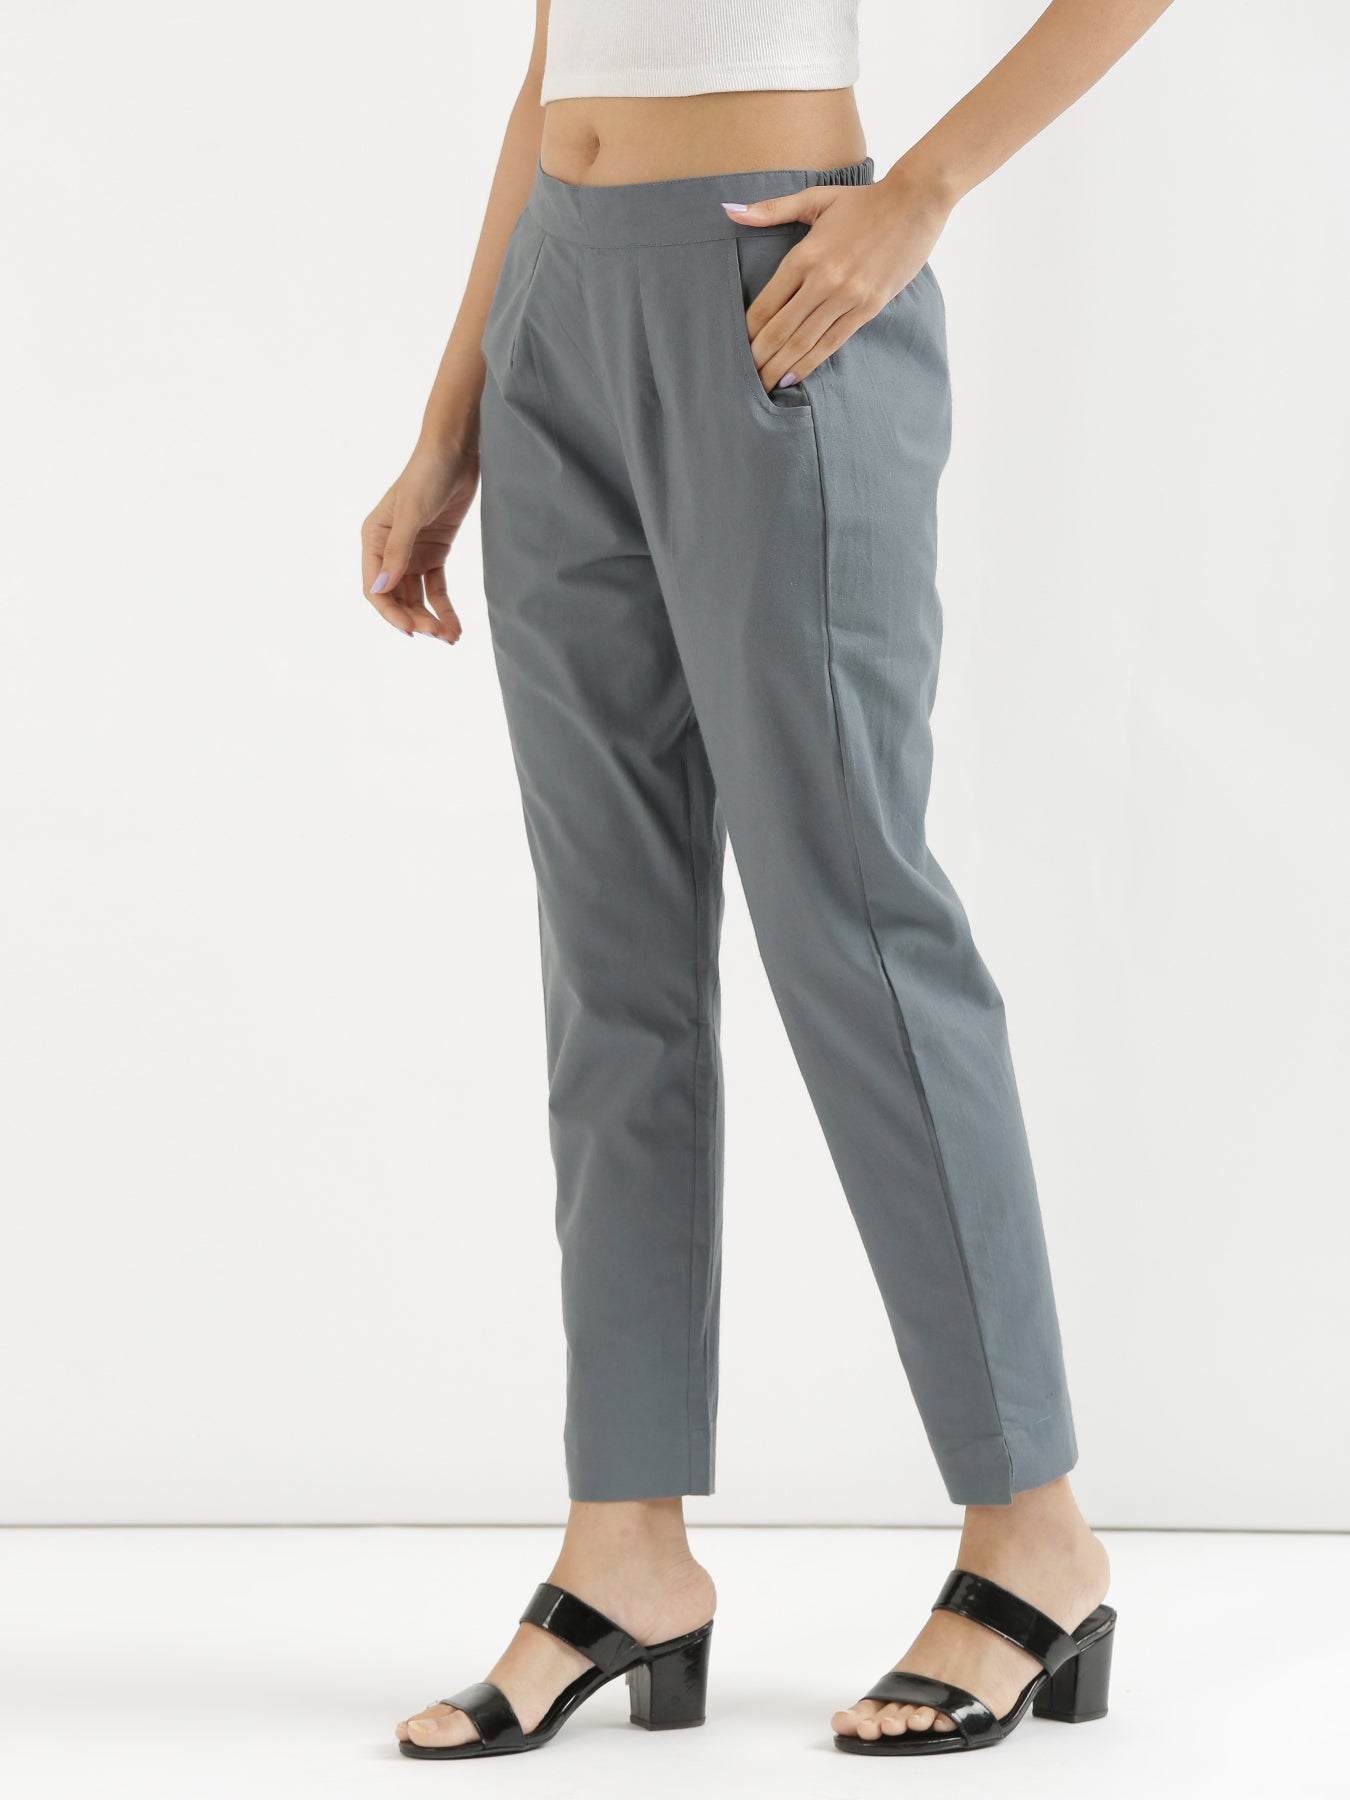 FLICKER Slim Fit Men Grey Trousers - Buy FLICKER Slim Fit Men Grey Trousers  Online at Best Prices in India | Flipkart.com